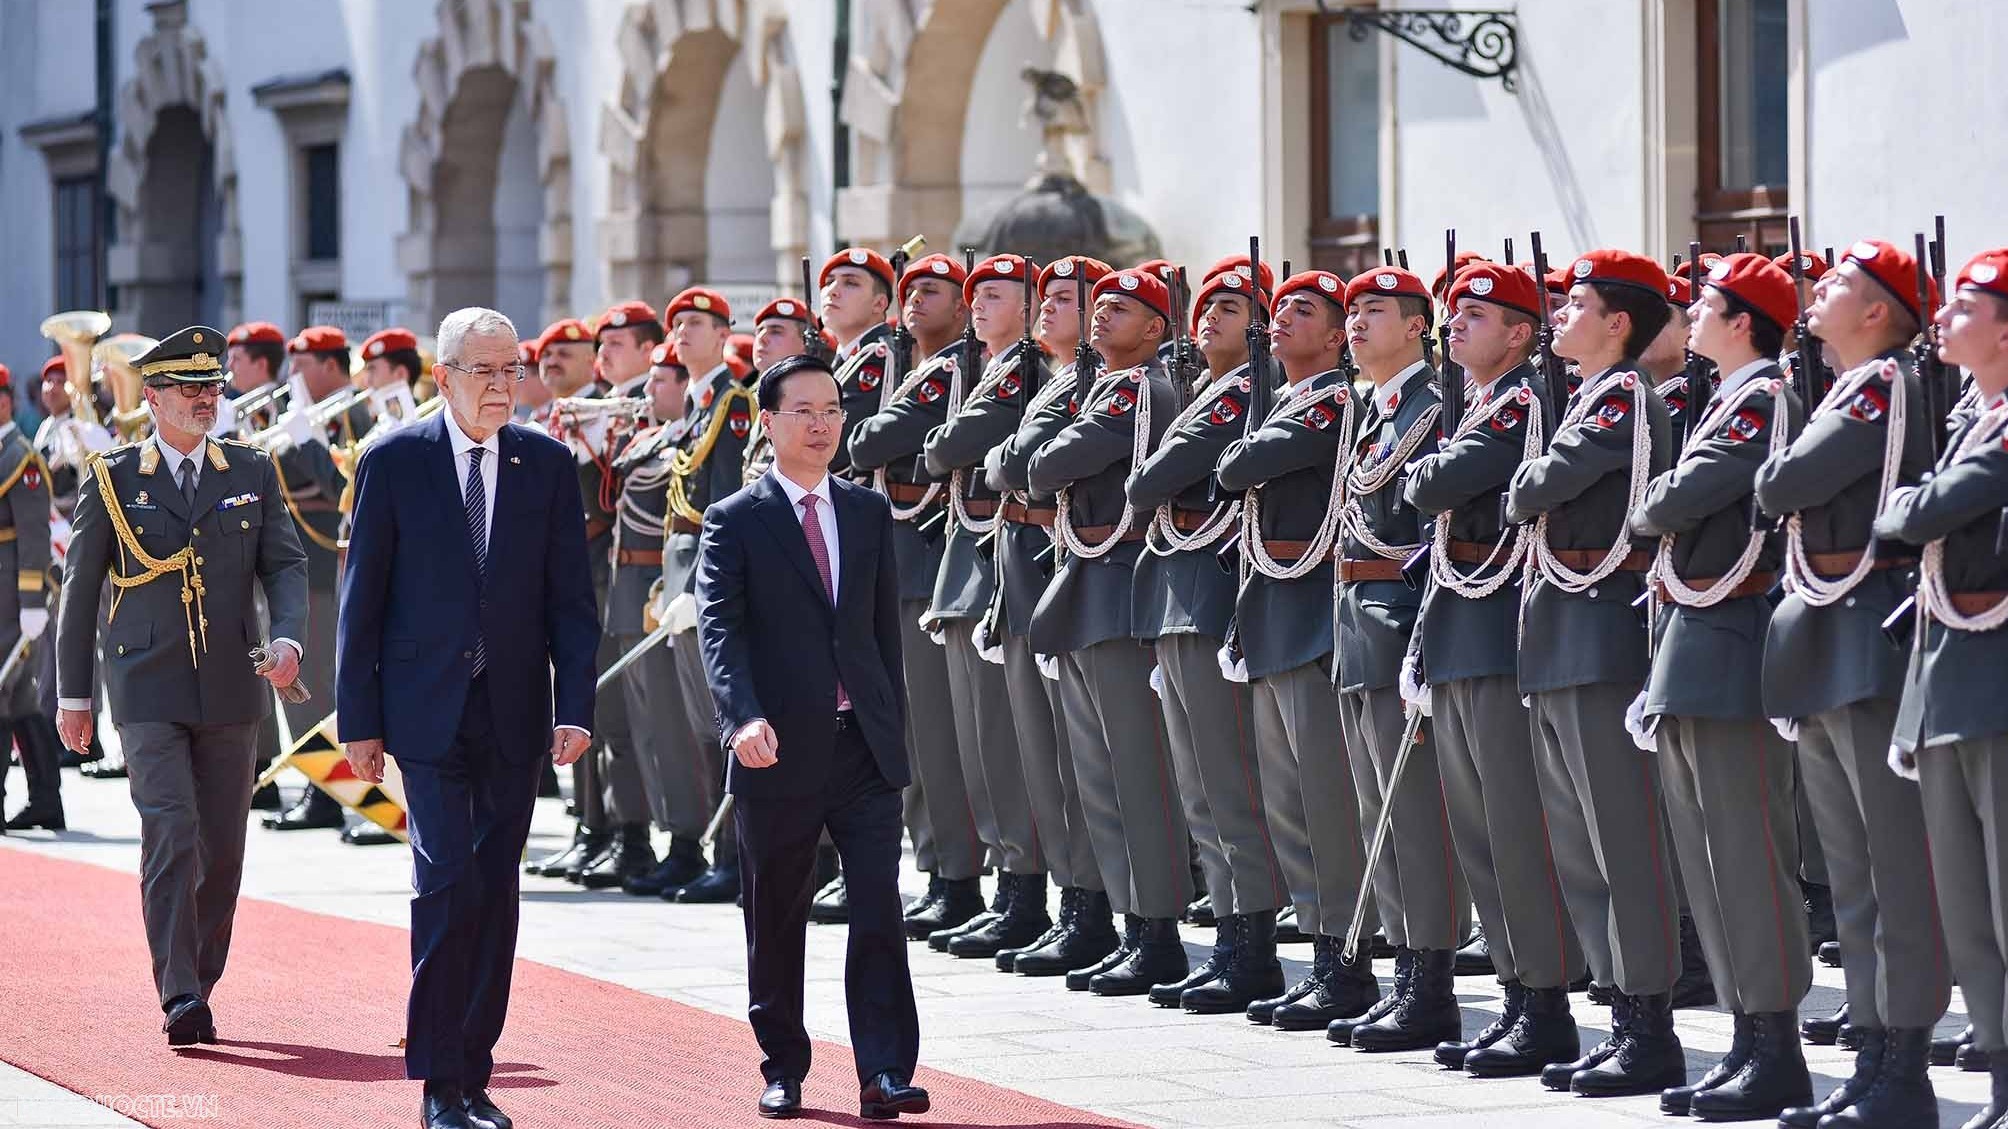 Việt Nam là đối tác quan trọng trong triển khai chính sách đối ngoại của Áo tại châu Á-Thái Bình Dương